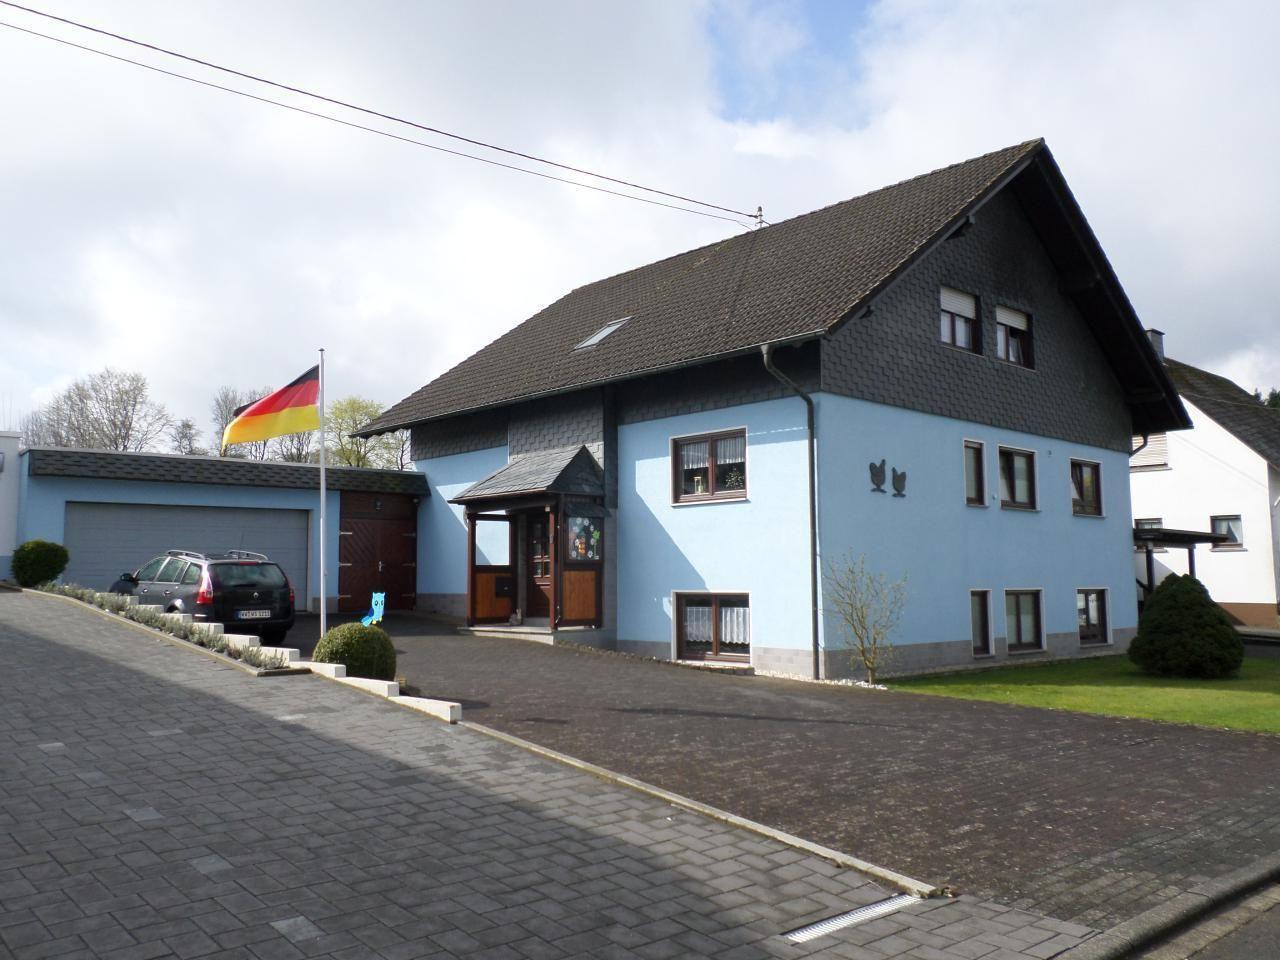 Wohnung in Dreisbach mit Terrasse, Garten und Gril   Rheinland Pfalz